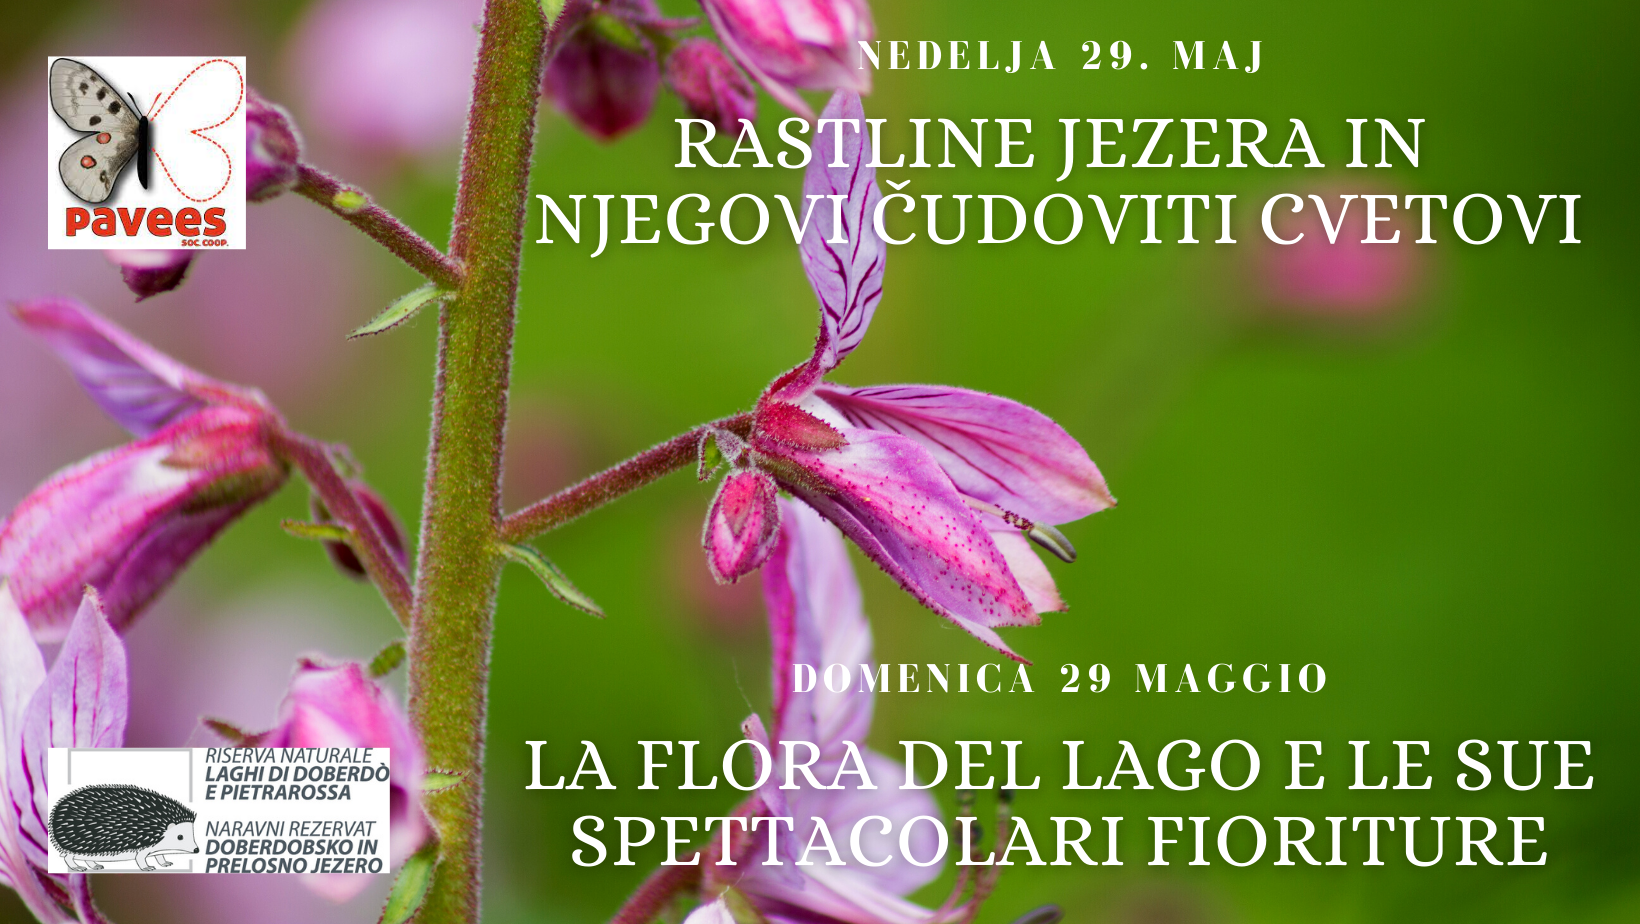 La flora del lago e le sue spettacolari fioriture - domenica 29 maggio 2022